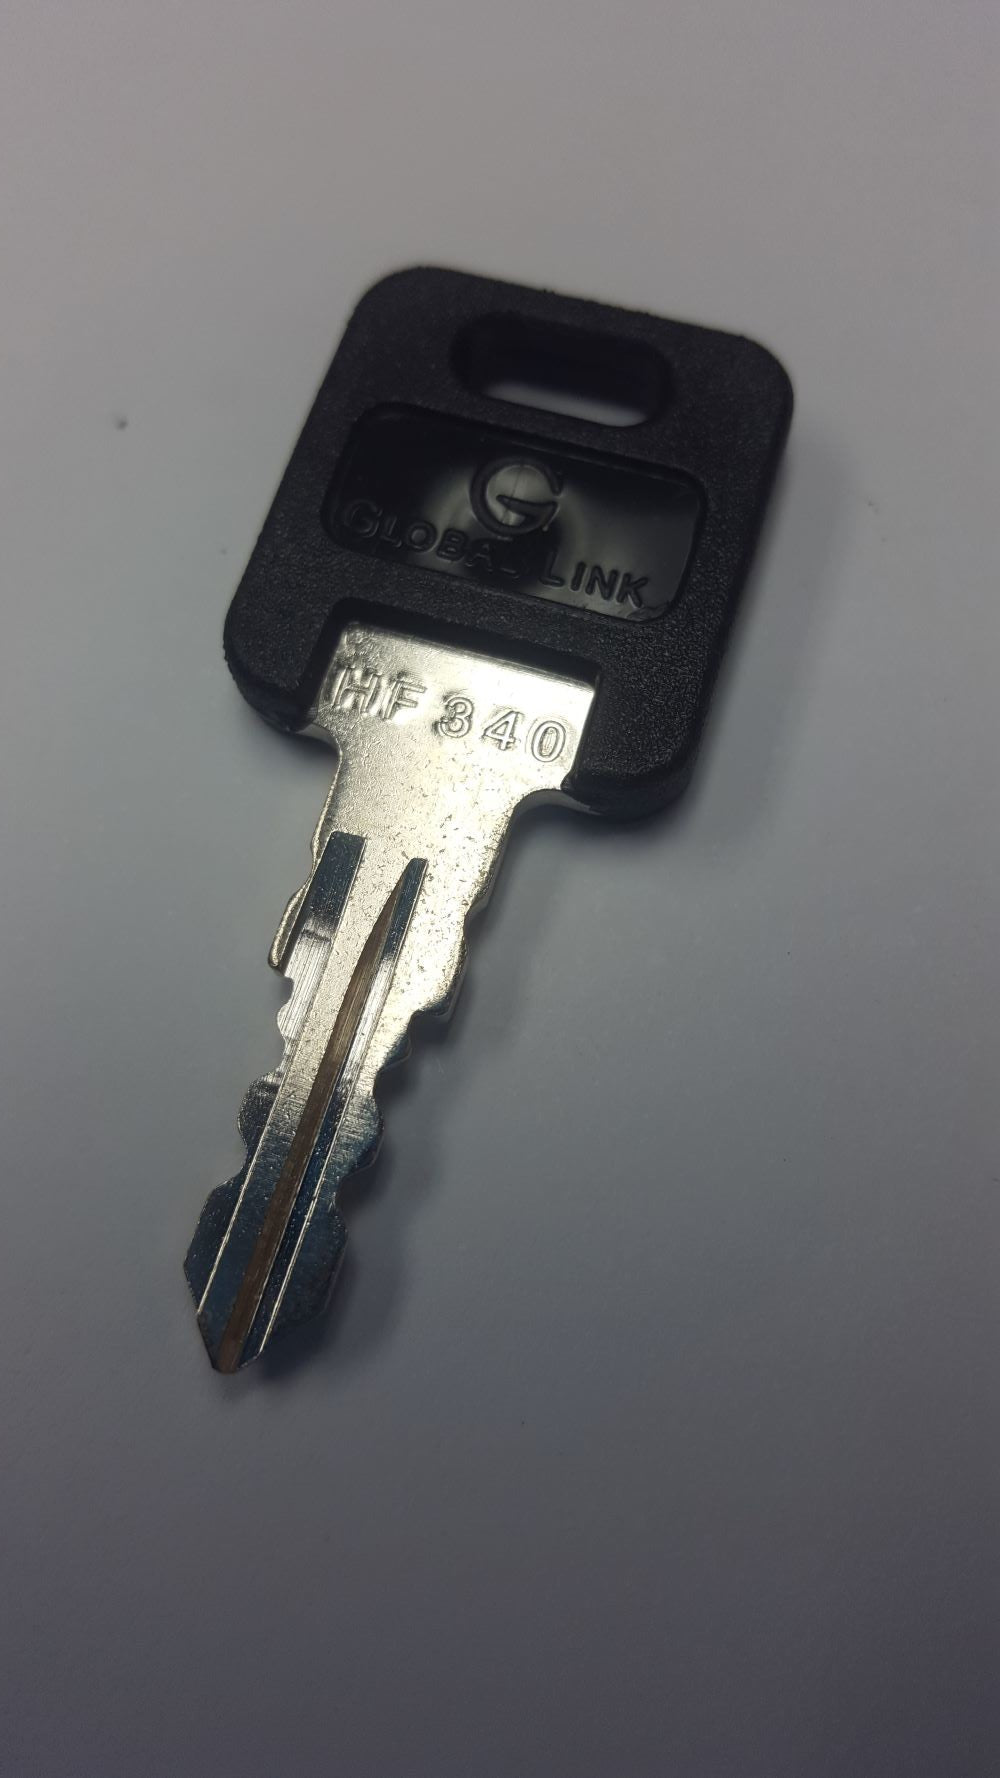 CPG KEY-HF-340 Pre-cut Stamped FIC Replacemnt HF340 Key